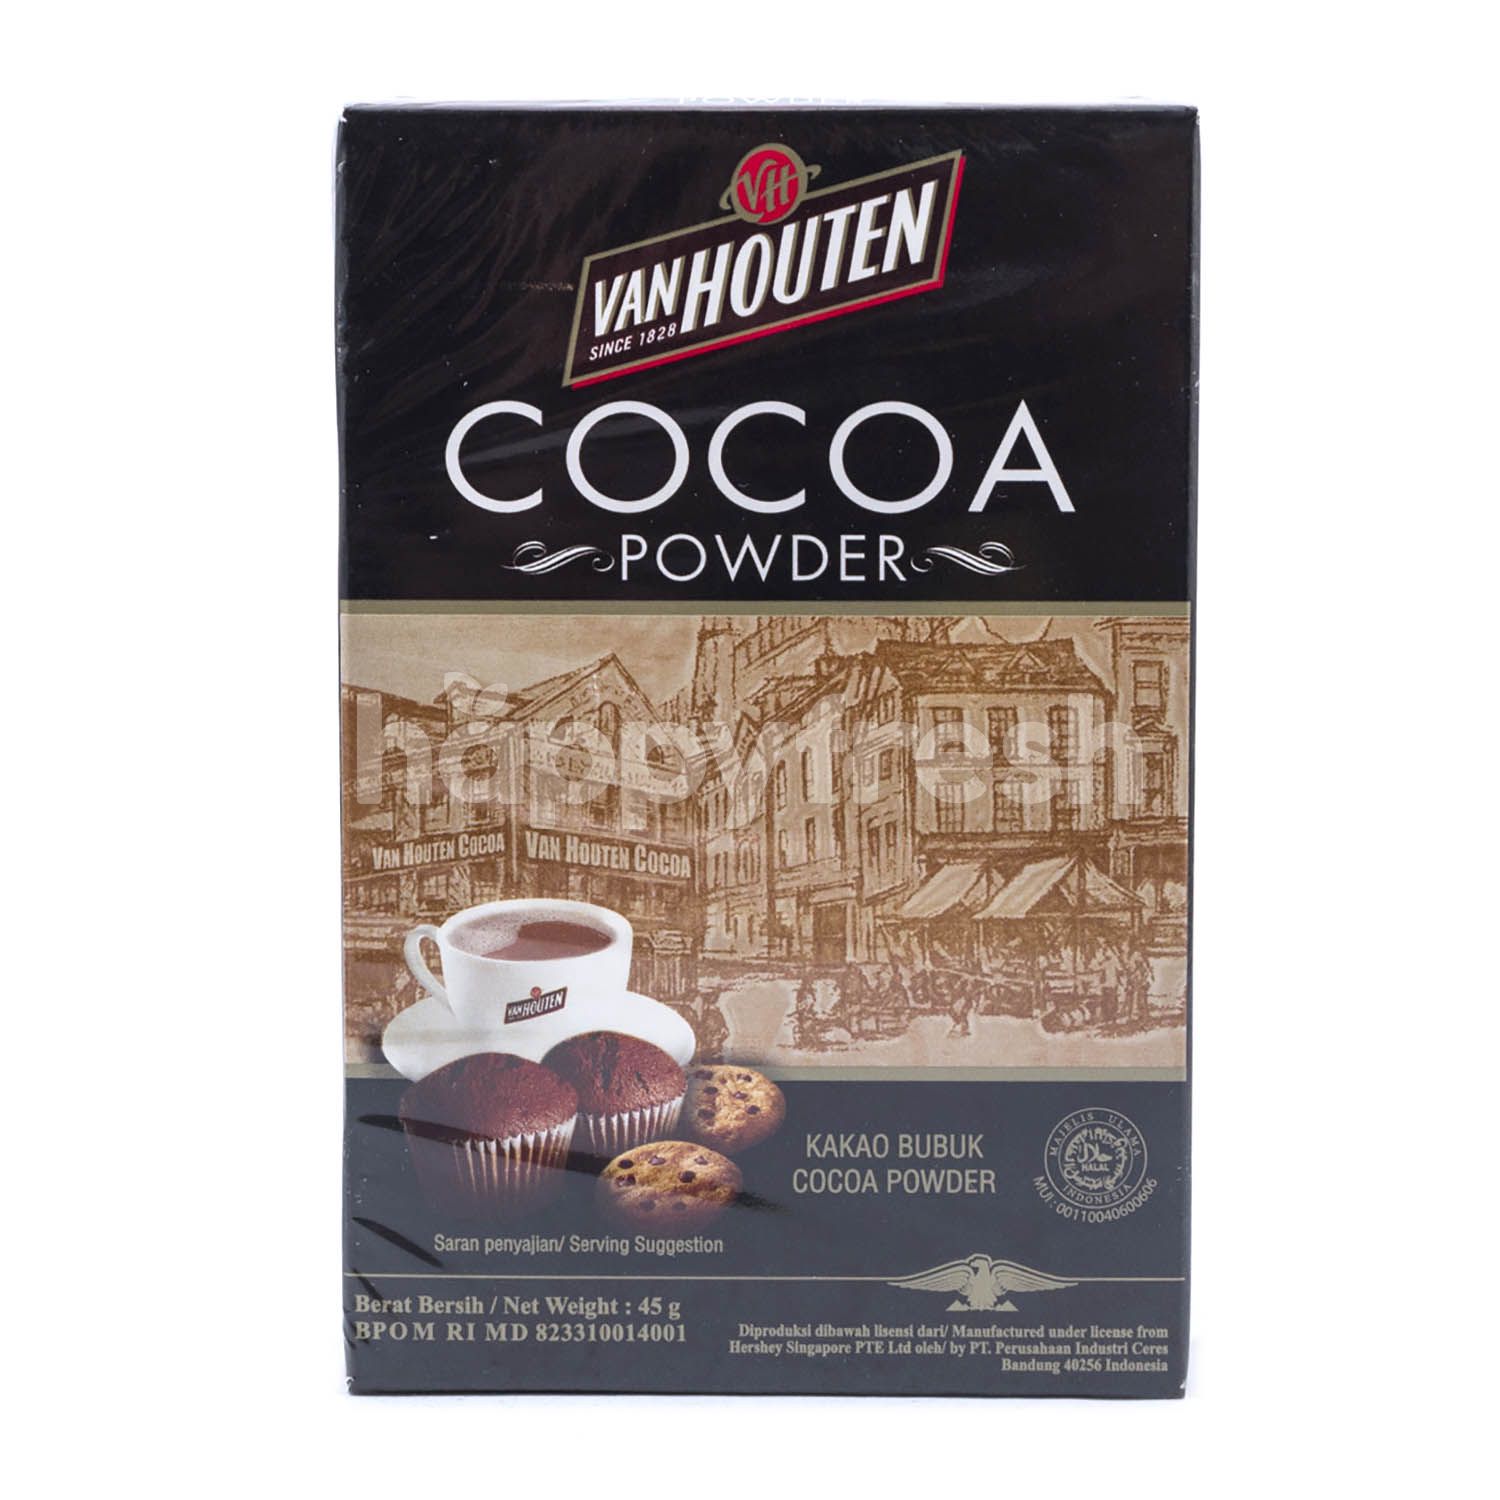 Jual Van Houten Cocoa Powder Mix di Farmers Market - HappyFresh